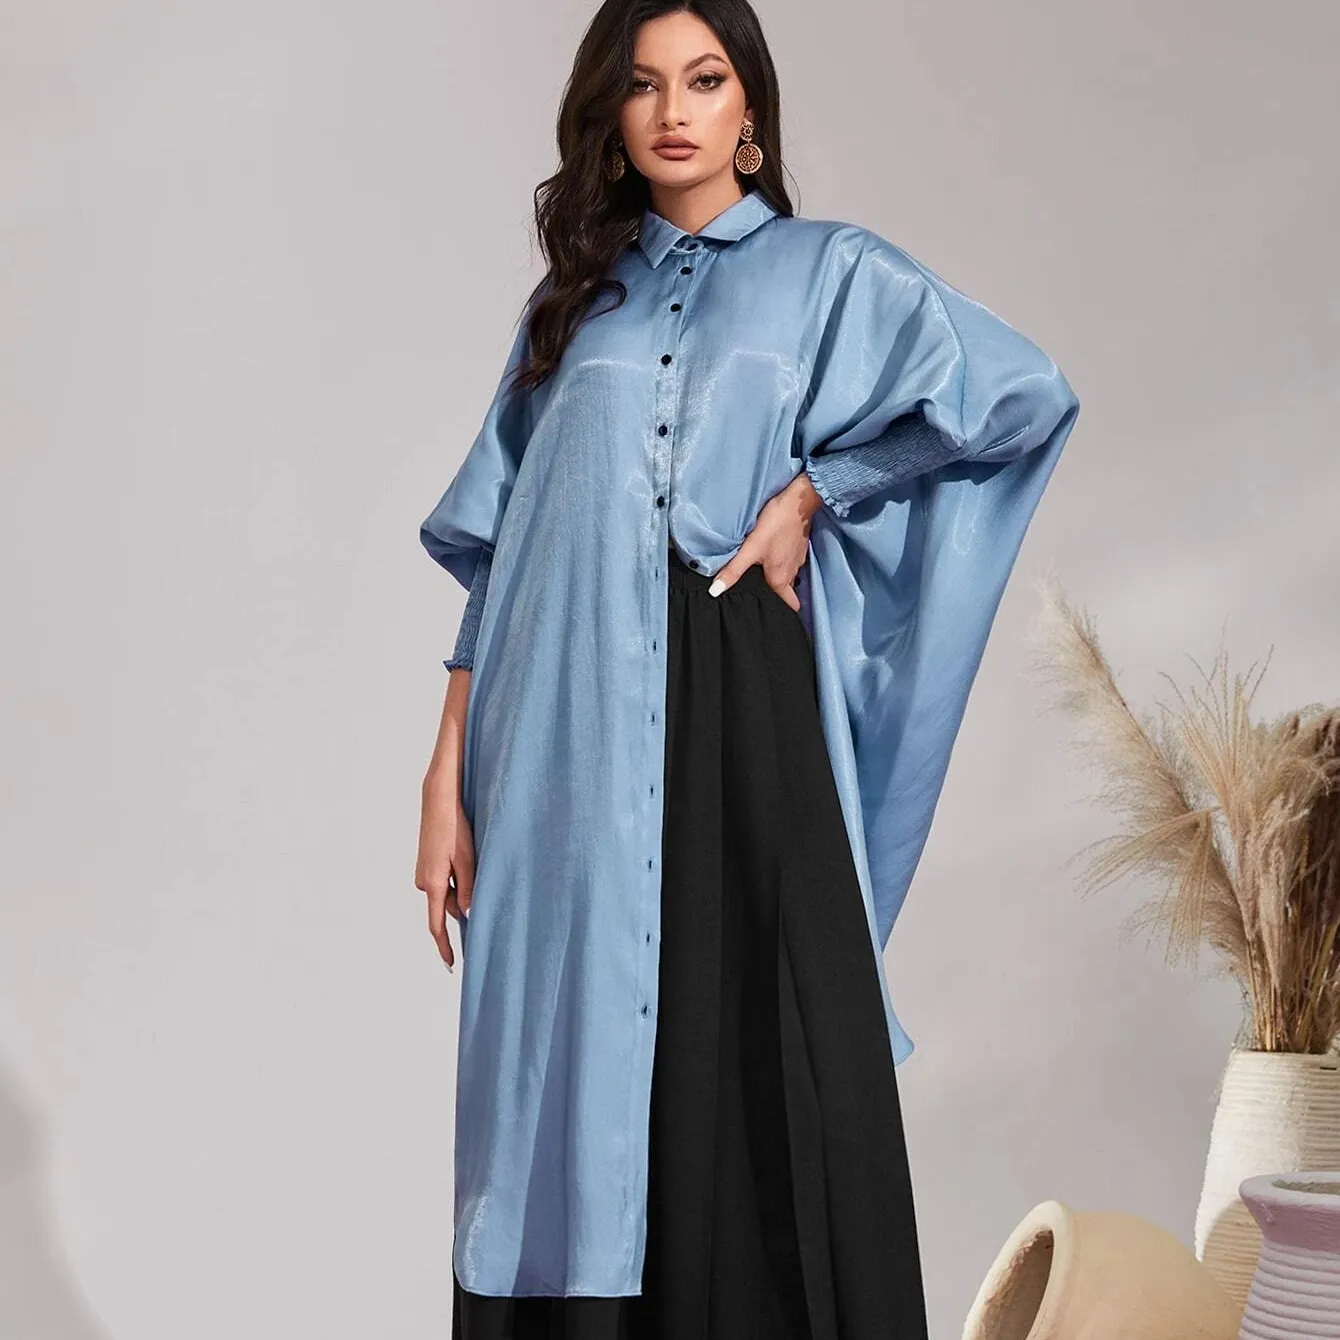 حار بيع رخيصة منظمات ترويج التجارة ملابس مسلمة فساتين فستان نمط إسلامي الهند مع بلوزة المرأة الأفريقية قميص